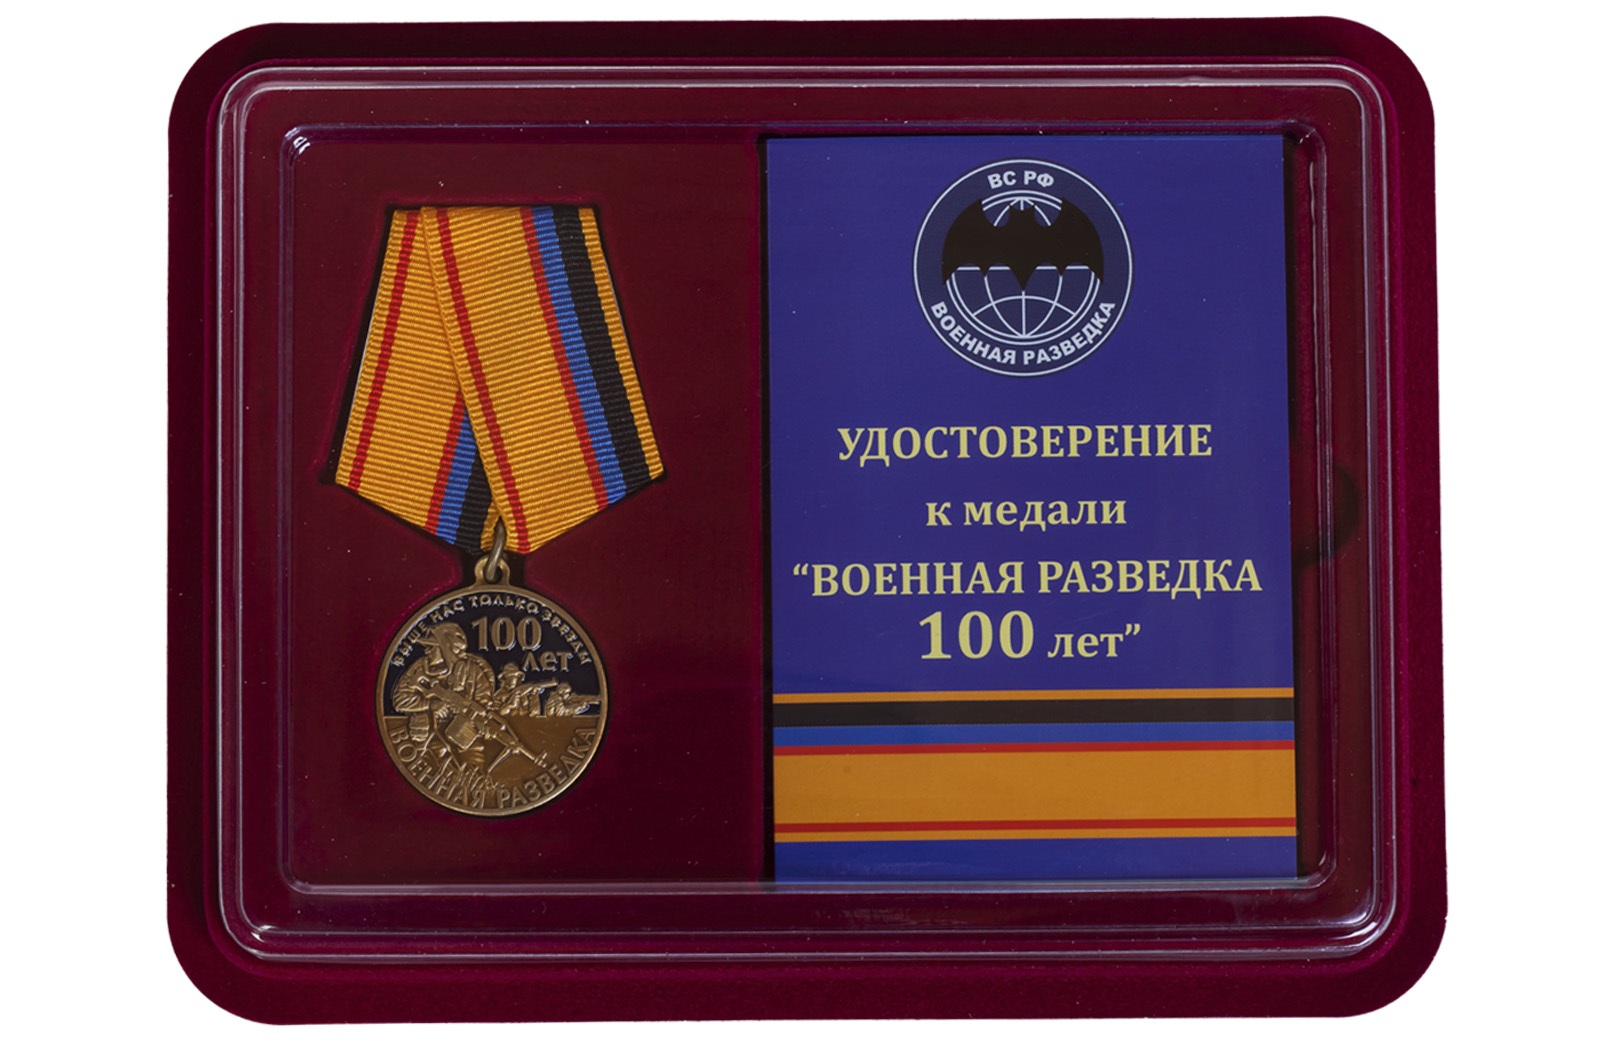 Купить медаль 100 лет Военной разведки в подарок мужу